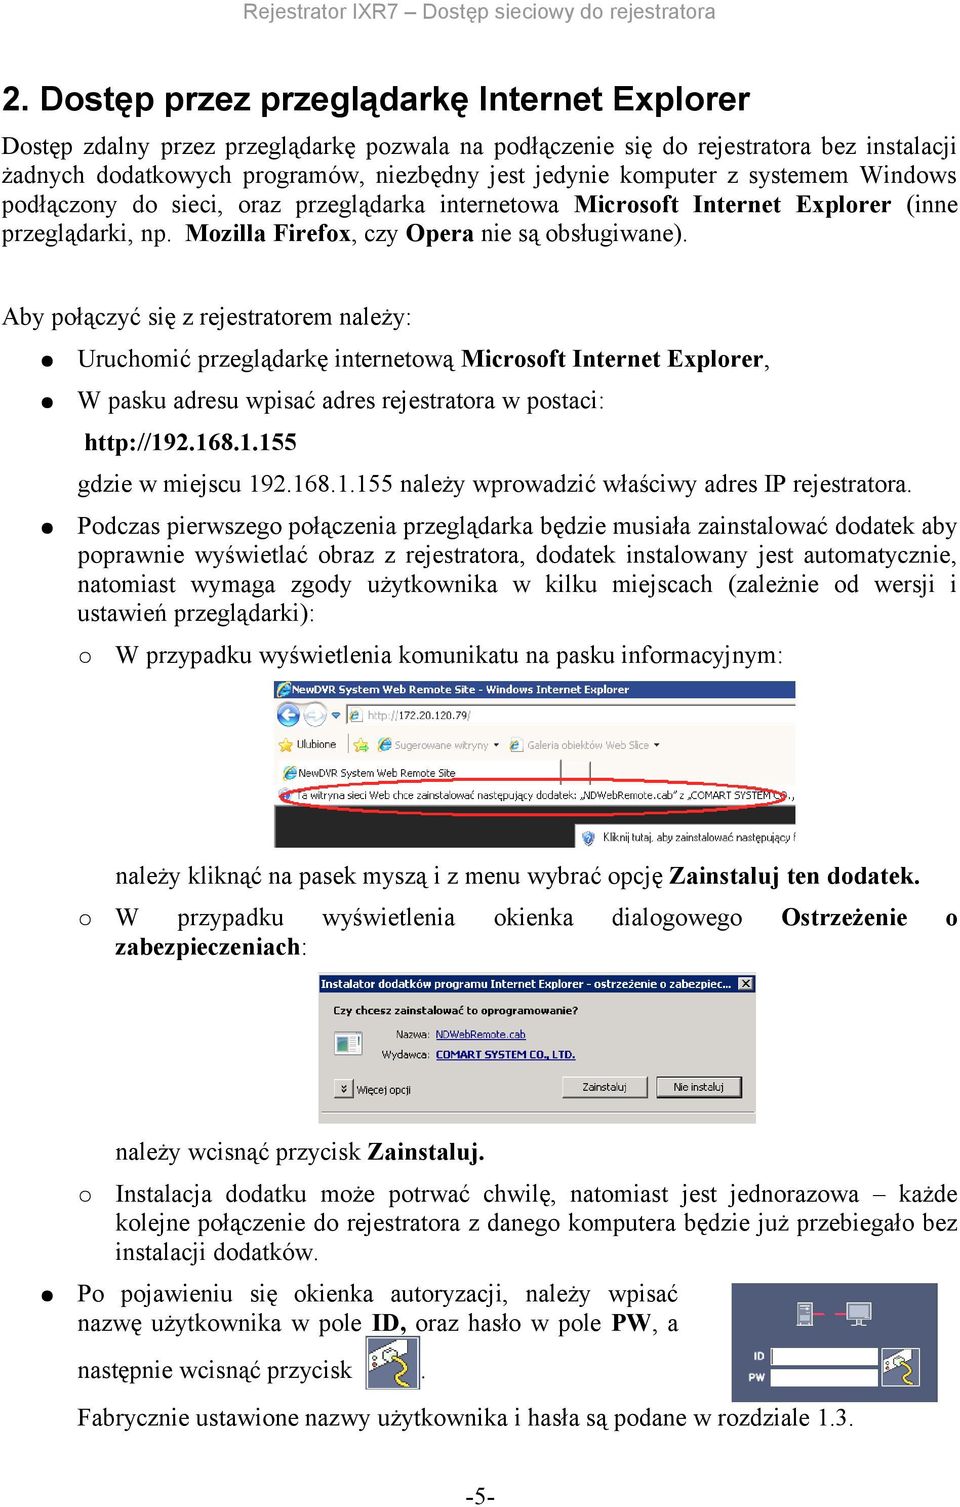 Aby połączyć się z rejestratorem należy: Uruchomić przeglądarkę internetową Microsoft Internet Explorer, W pasku adresu wpisać adres rejestratora w postaci: http://192.168.1.155 gdzie w miejscu 192.